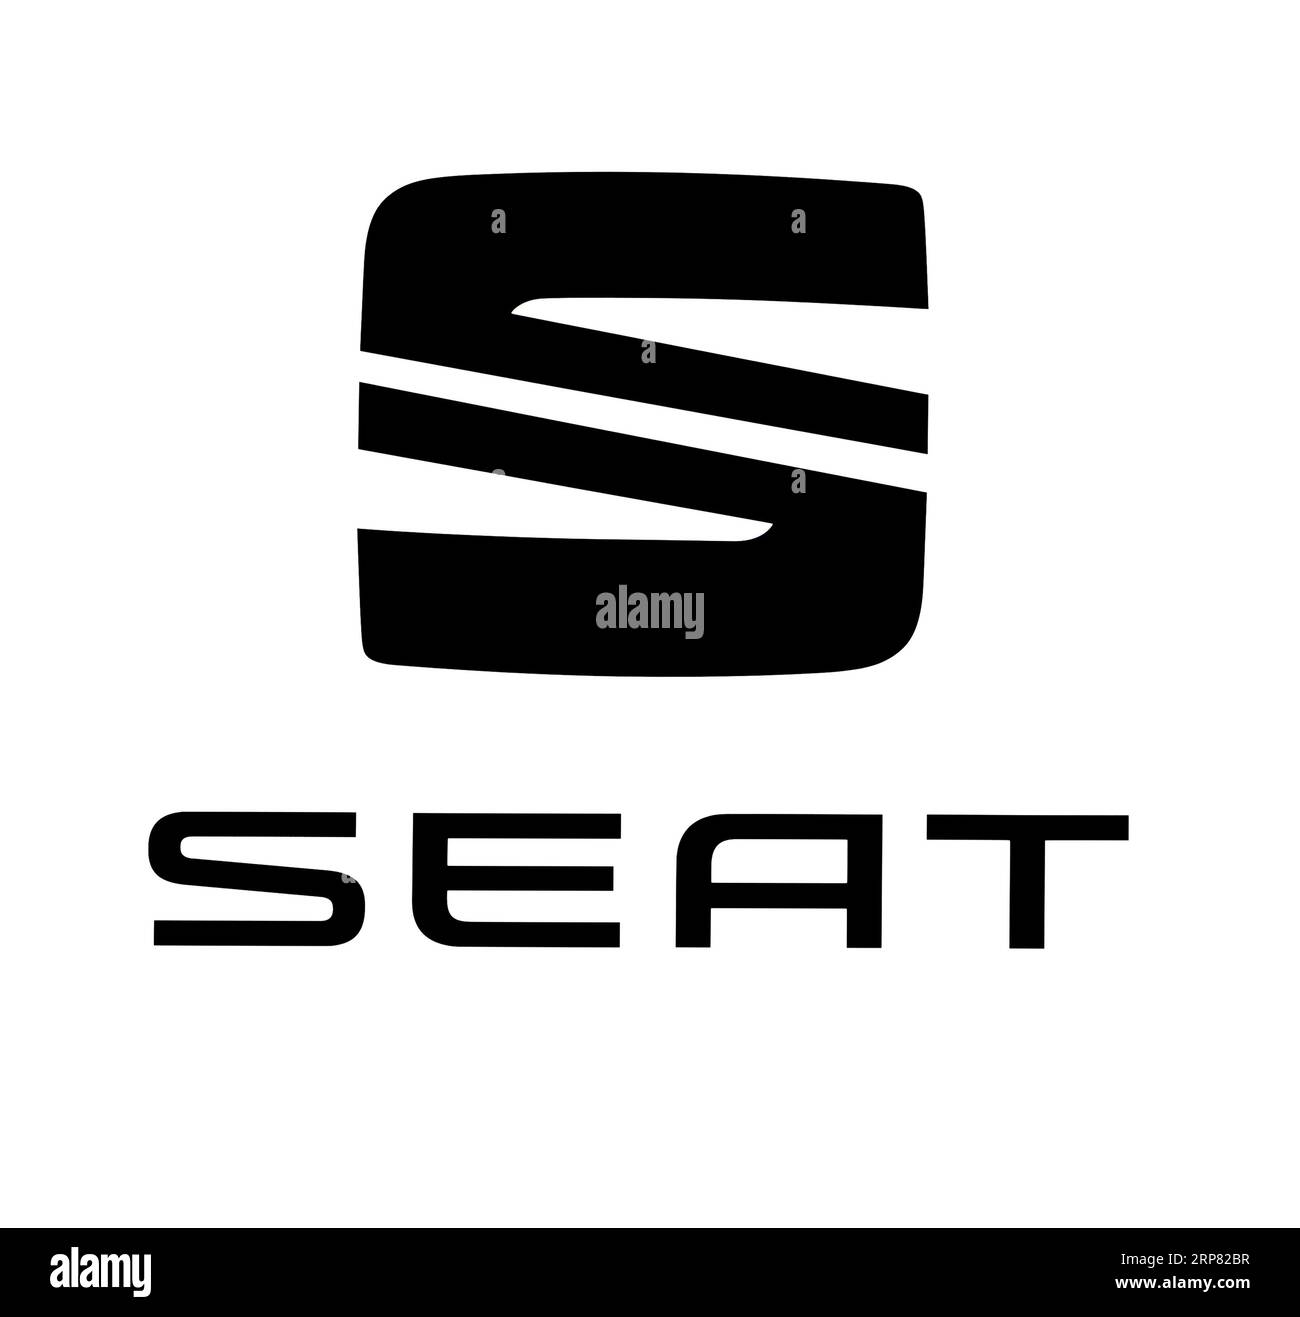 Logo de la marque de voiture Seat, voiture, véhicule à moteur, découpe sur fond blanc Banque D'Images